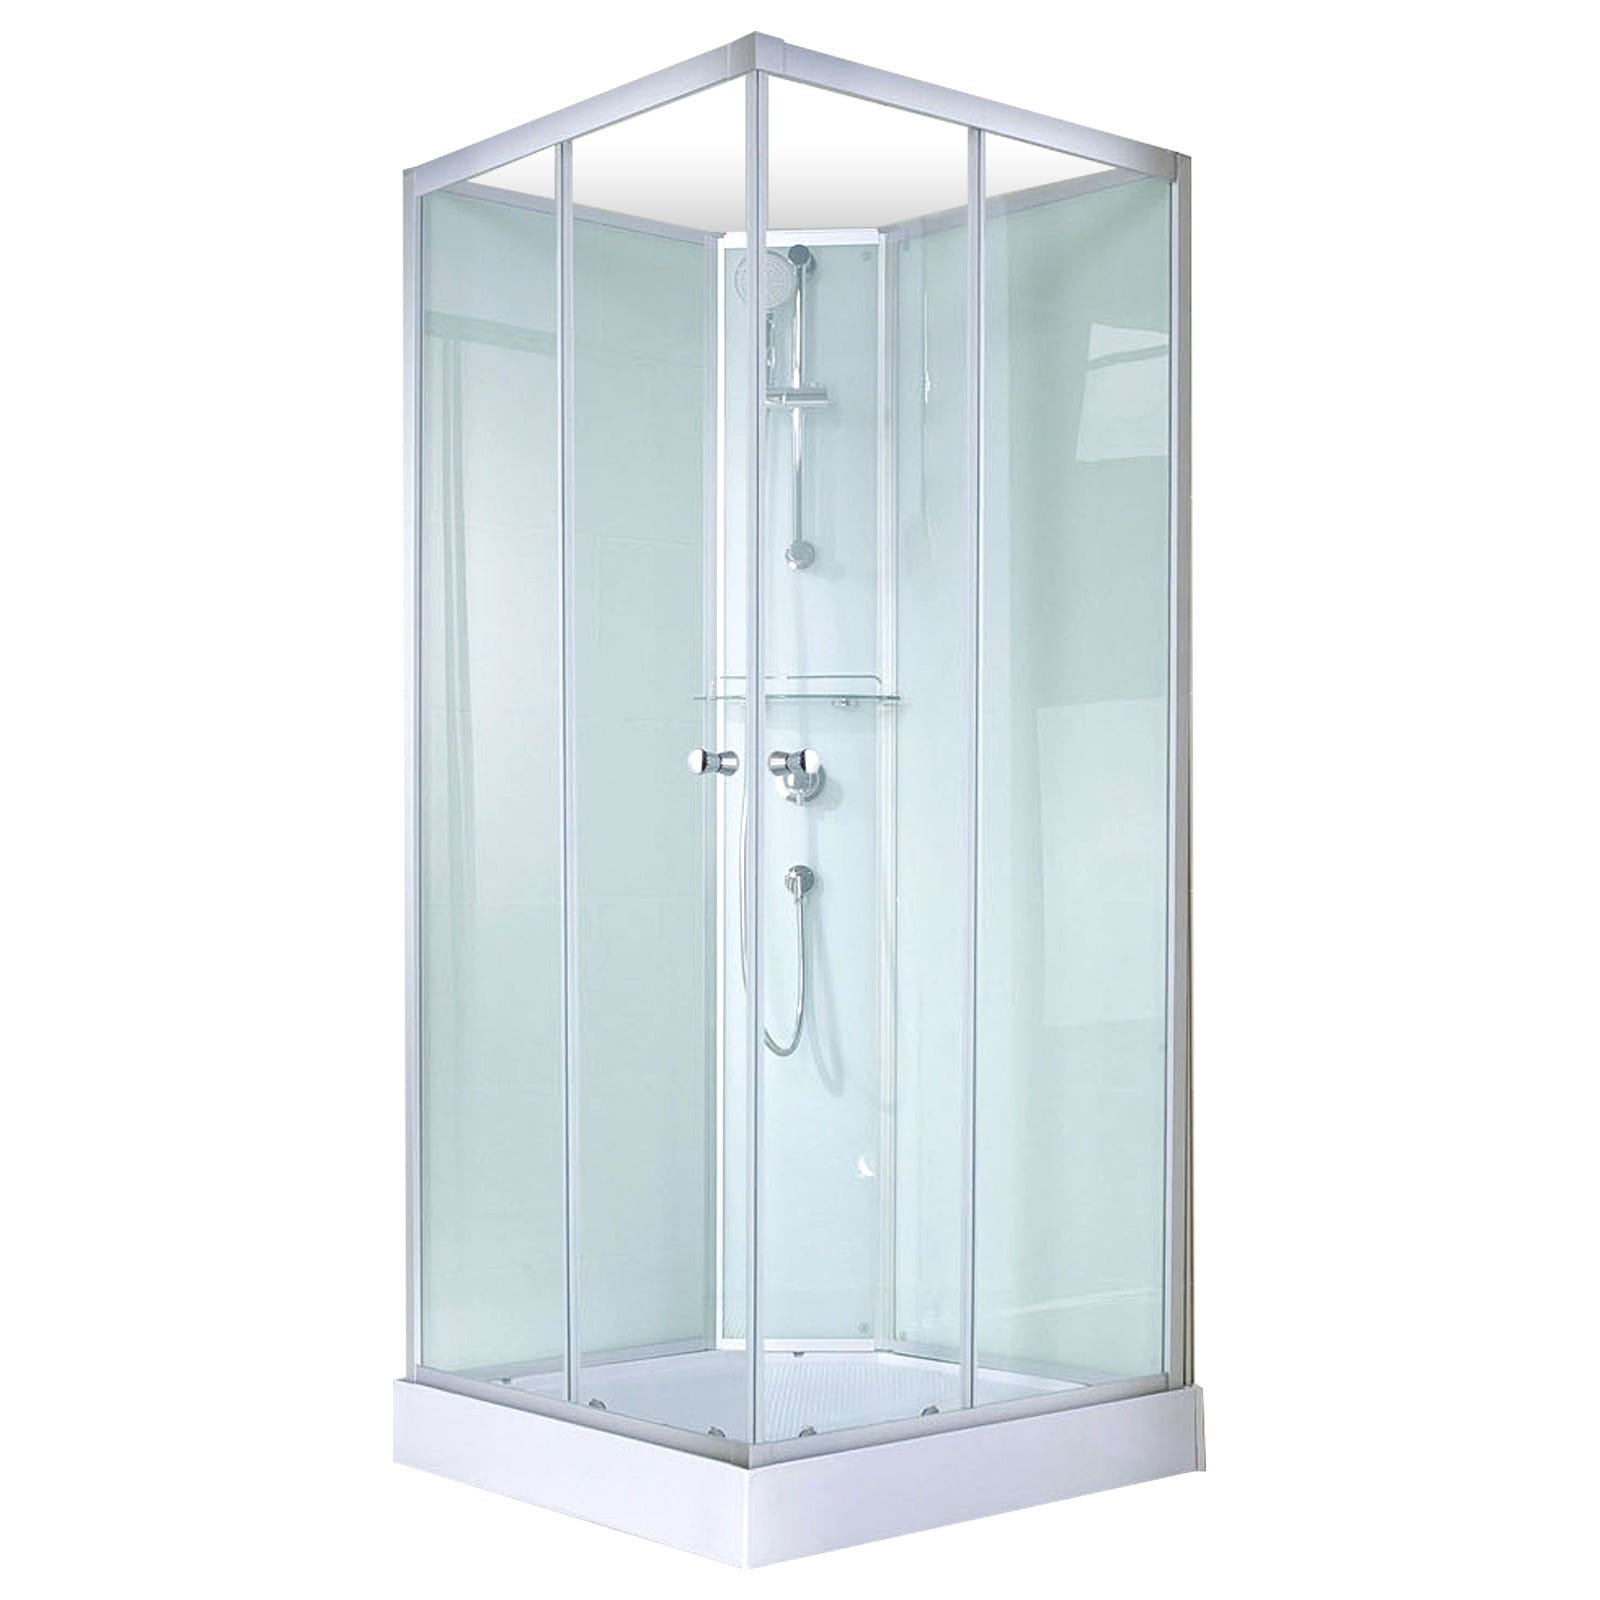 Schulte cabine de douche intégrale 90 x 90 cm, verre 5 mm, cabine de douche complète carrée, Ibiza 1